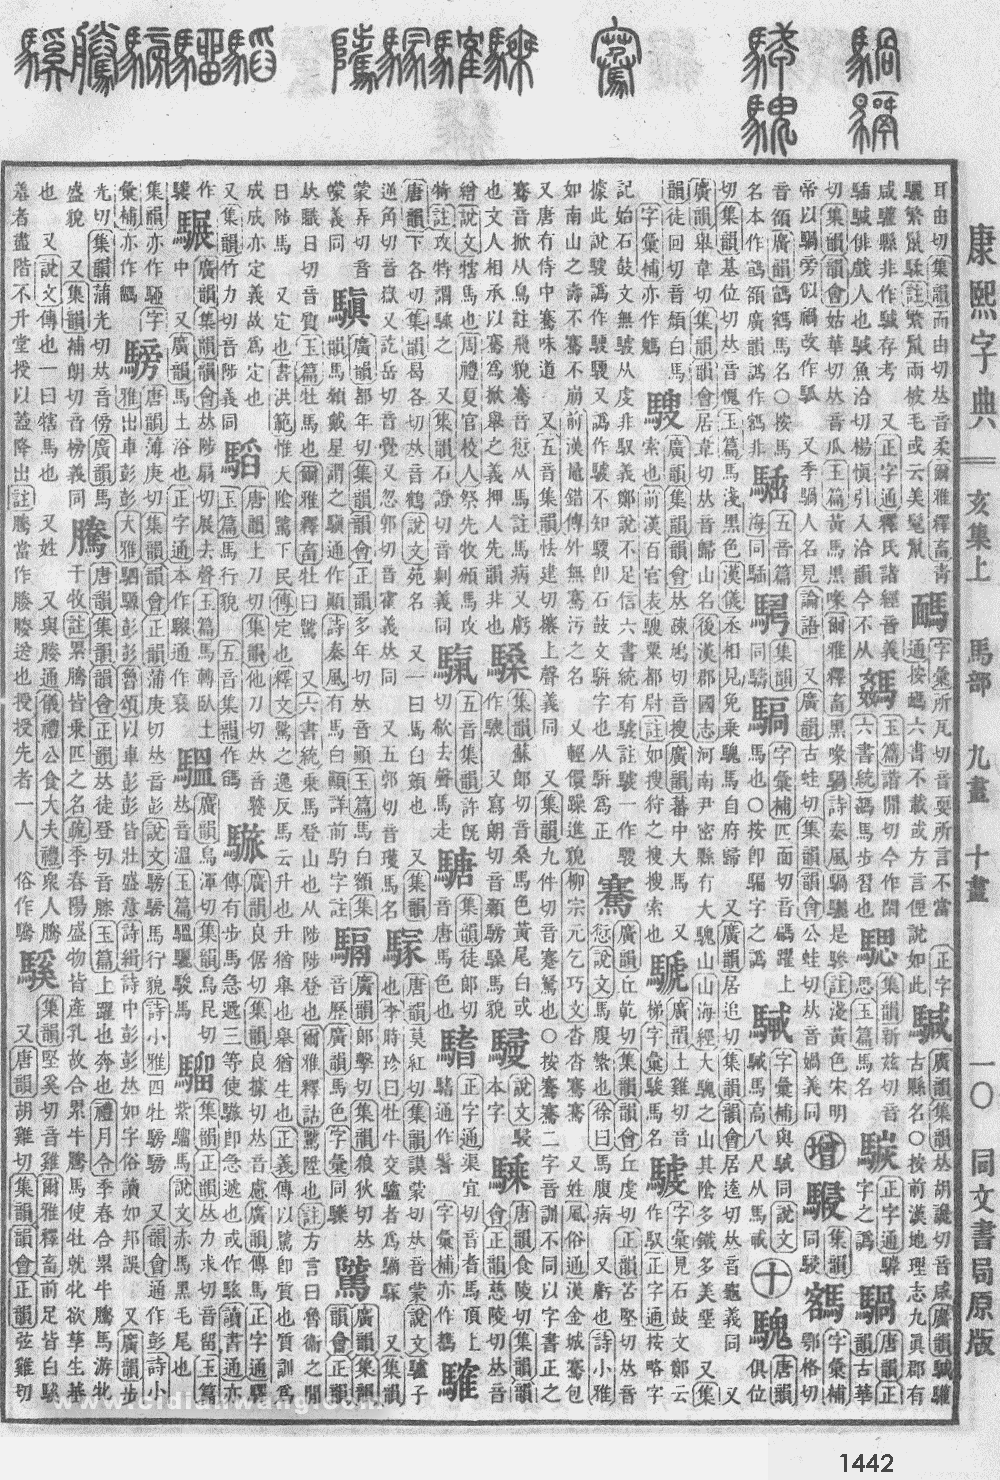 康熙字典掃描版第1442頁